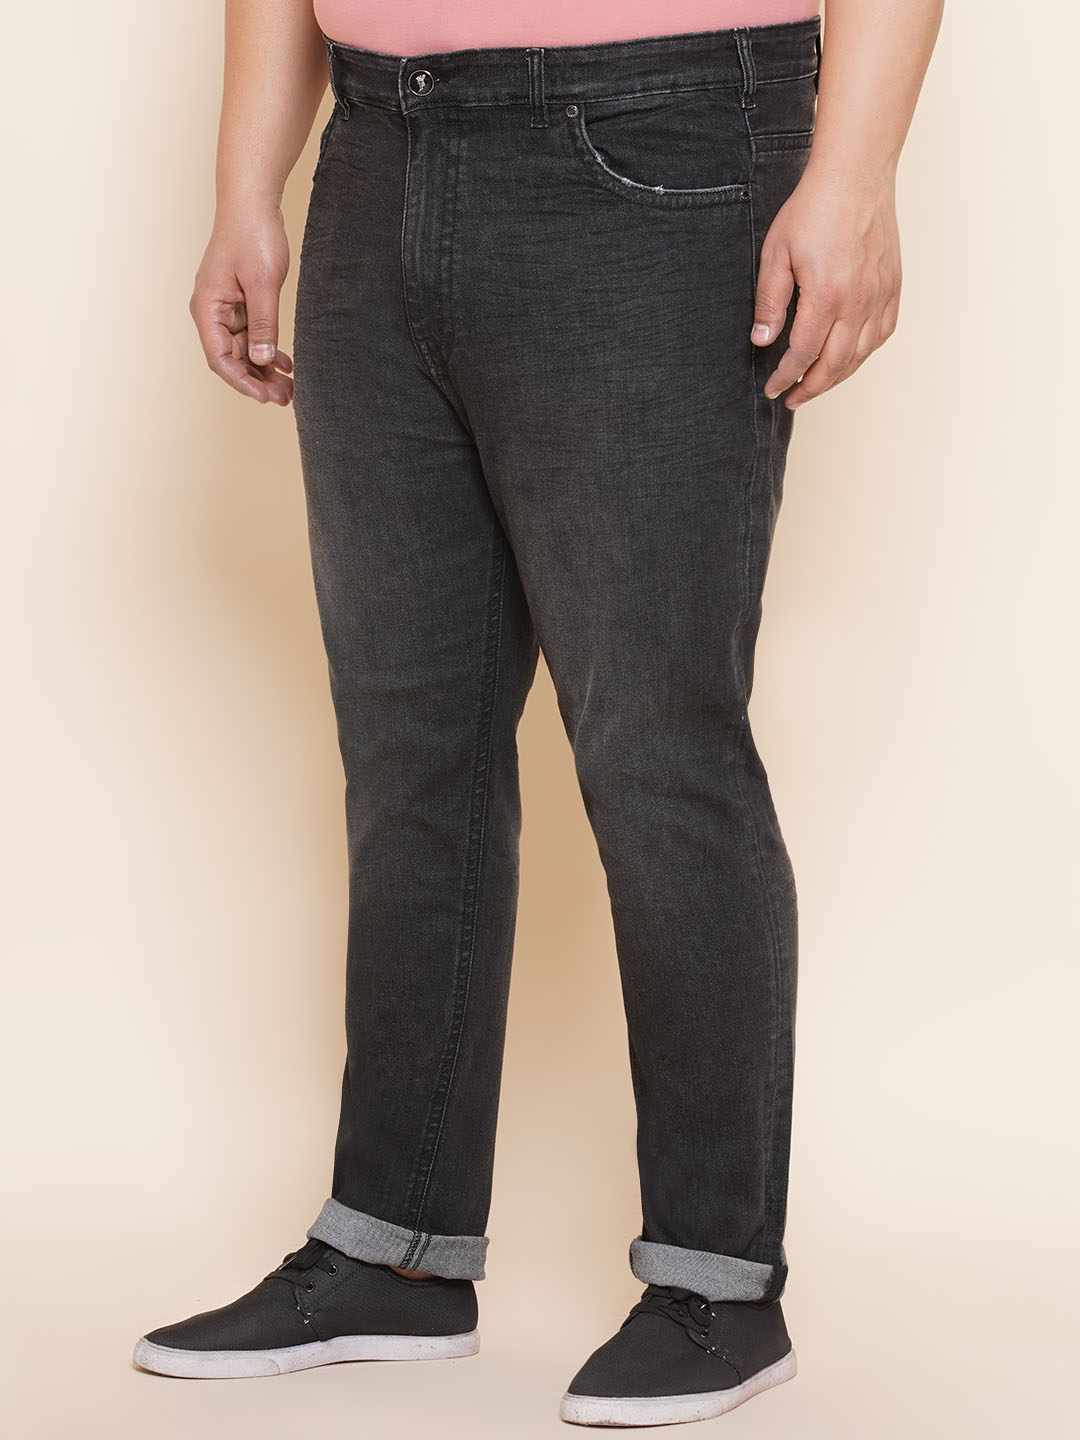 bottomwear/jeans/PJPJ6062/pjpj6062-4.jpg